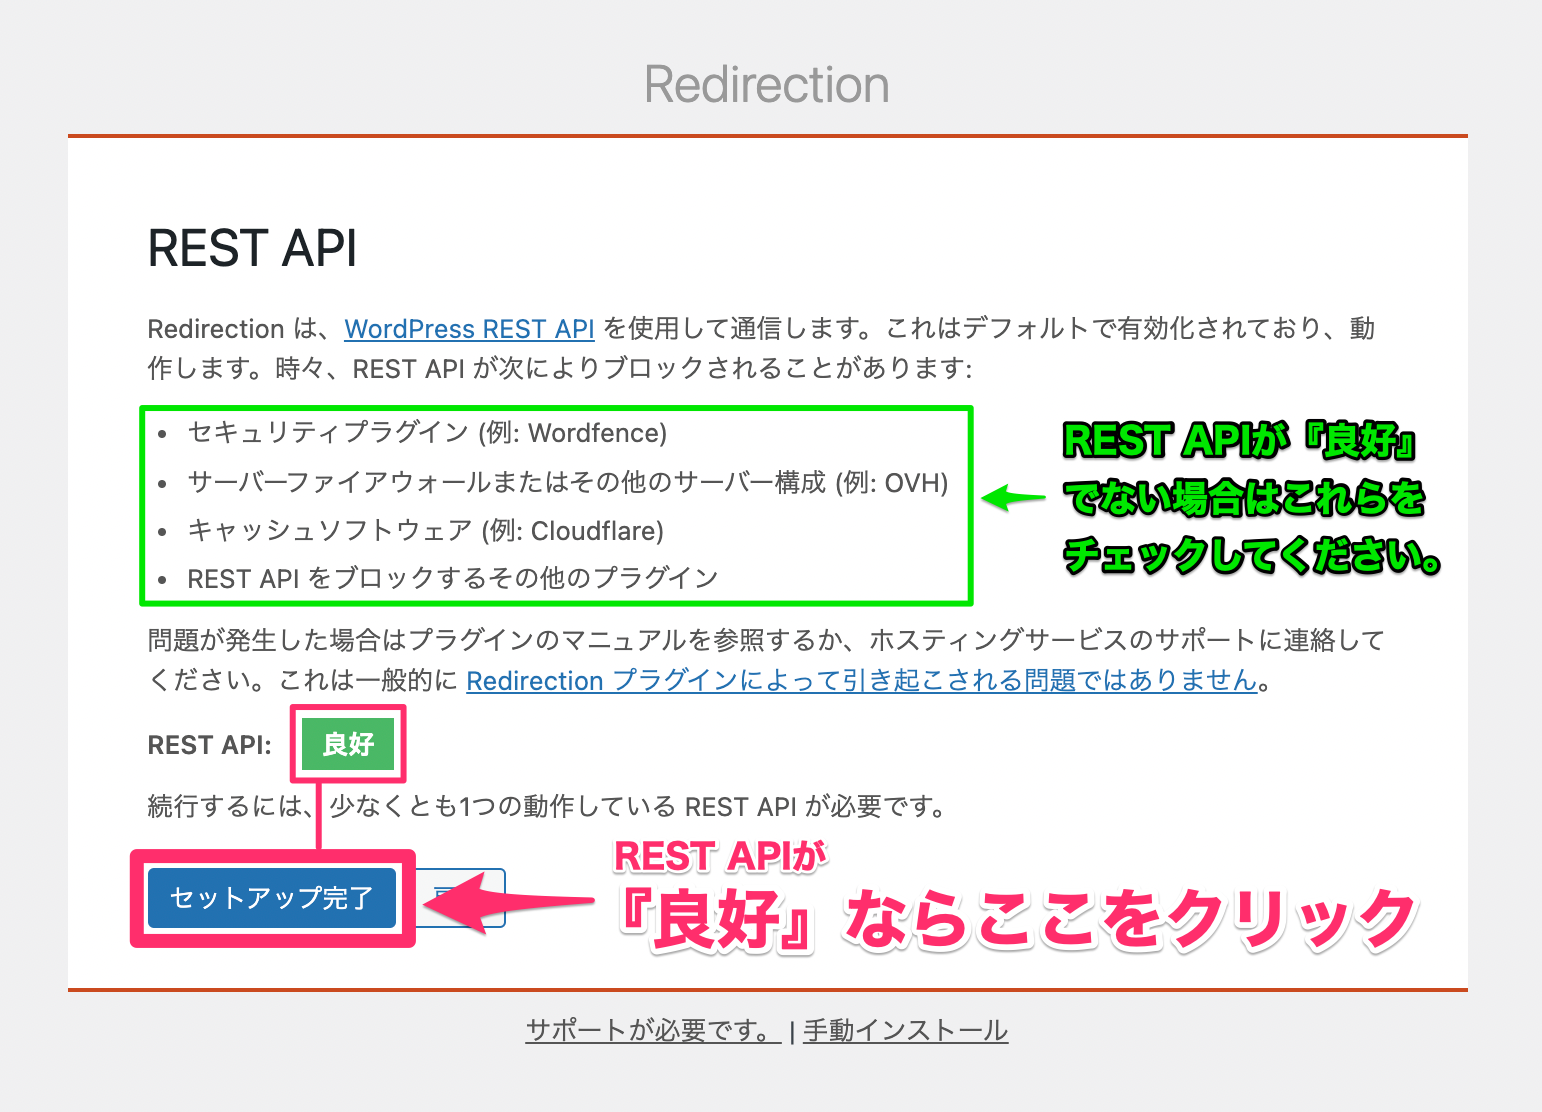 『REST API』が『良好』であることを確認し、『セットアップ完了』をクリック